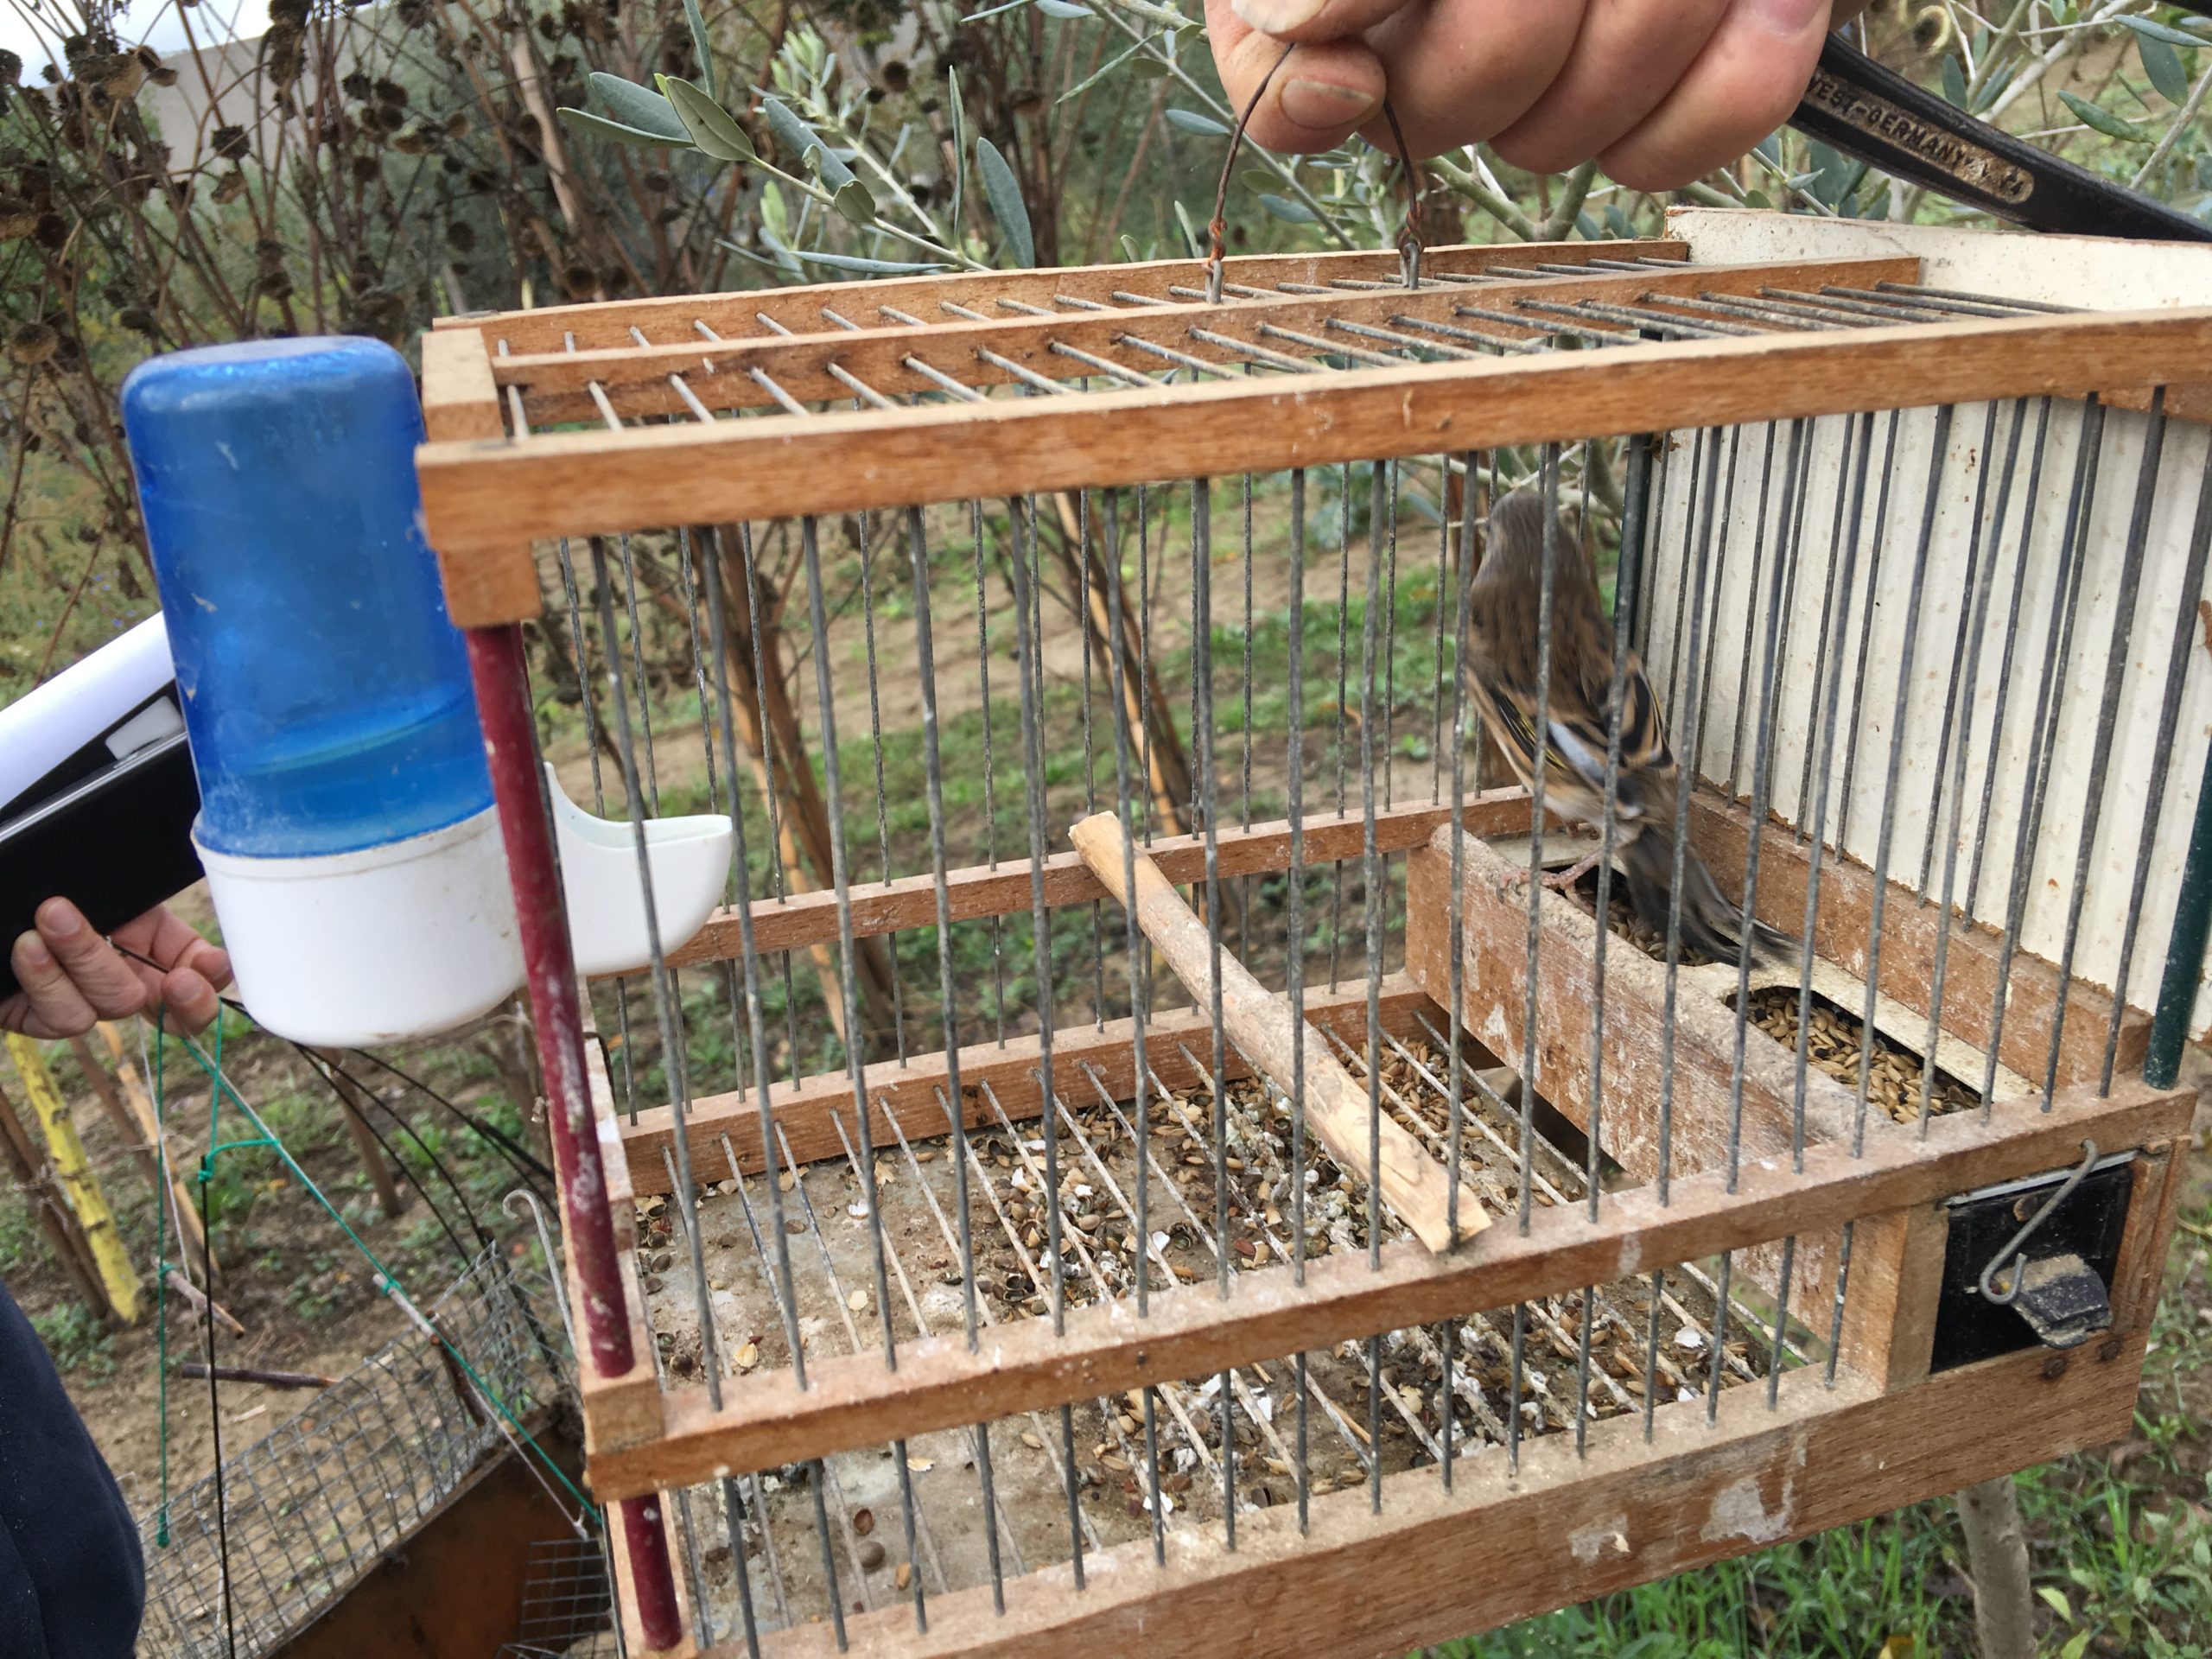 Uccello vivo e trappole per catturare i volatili migratori, denunciato agricoltore